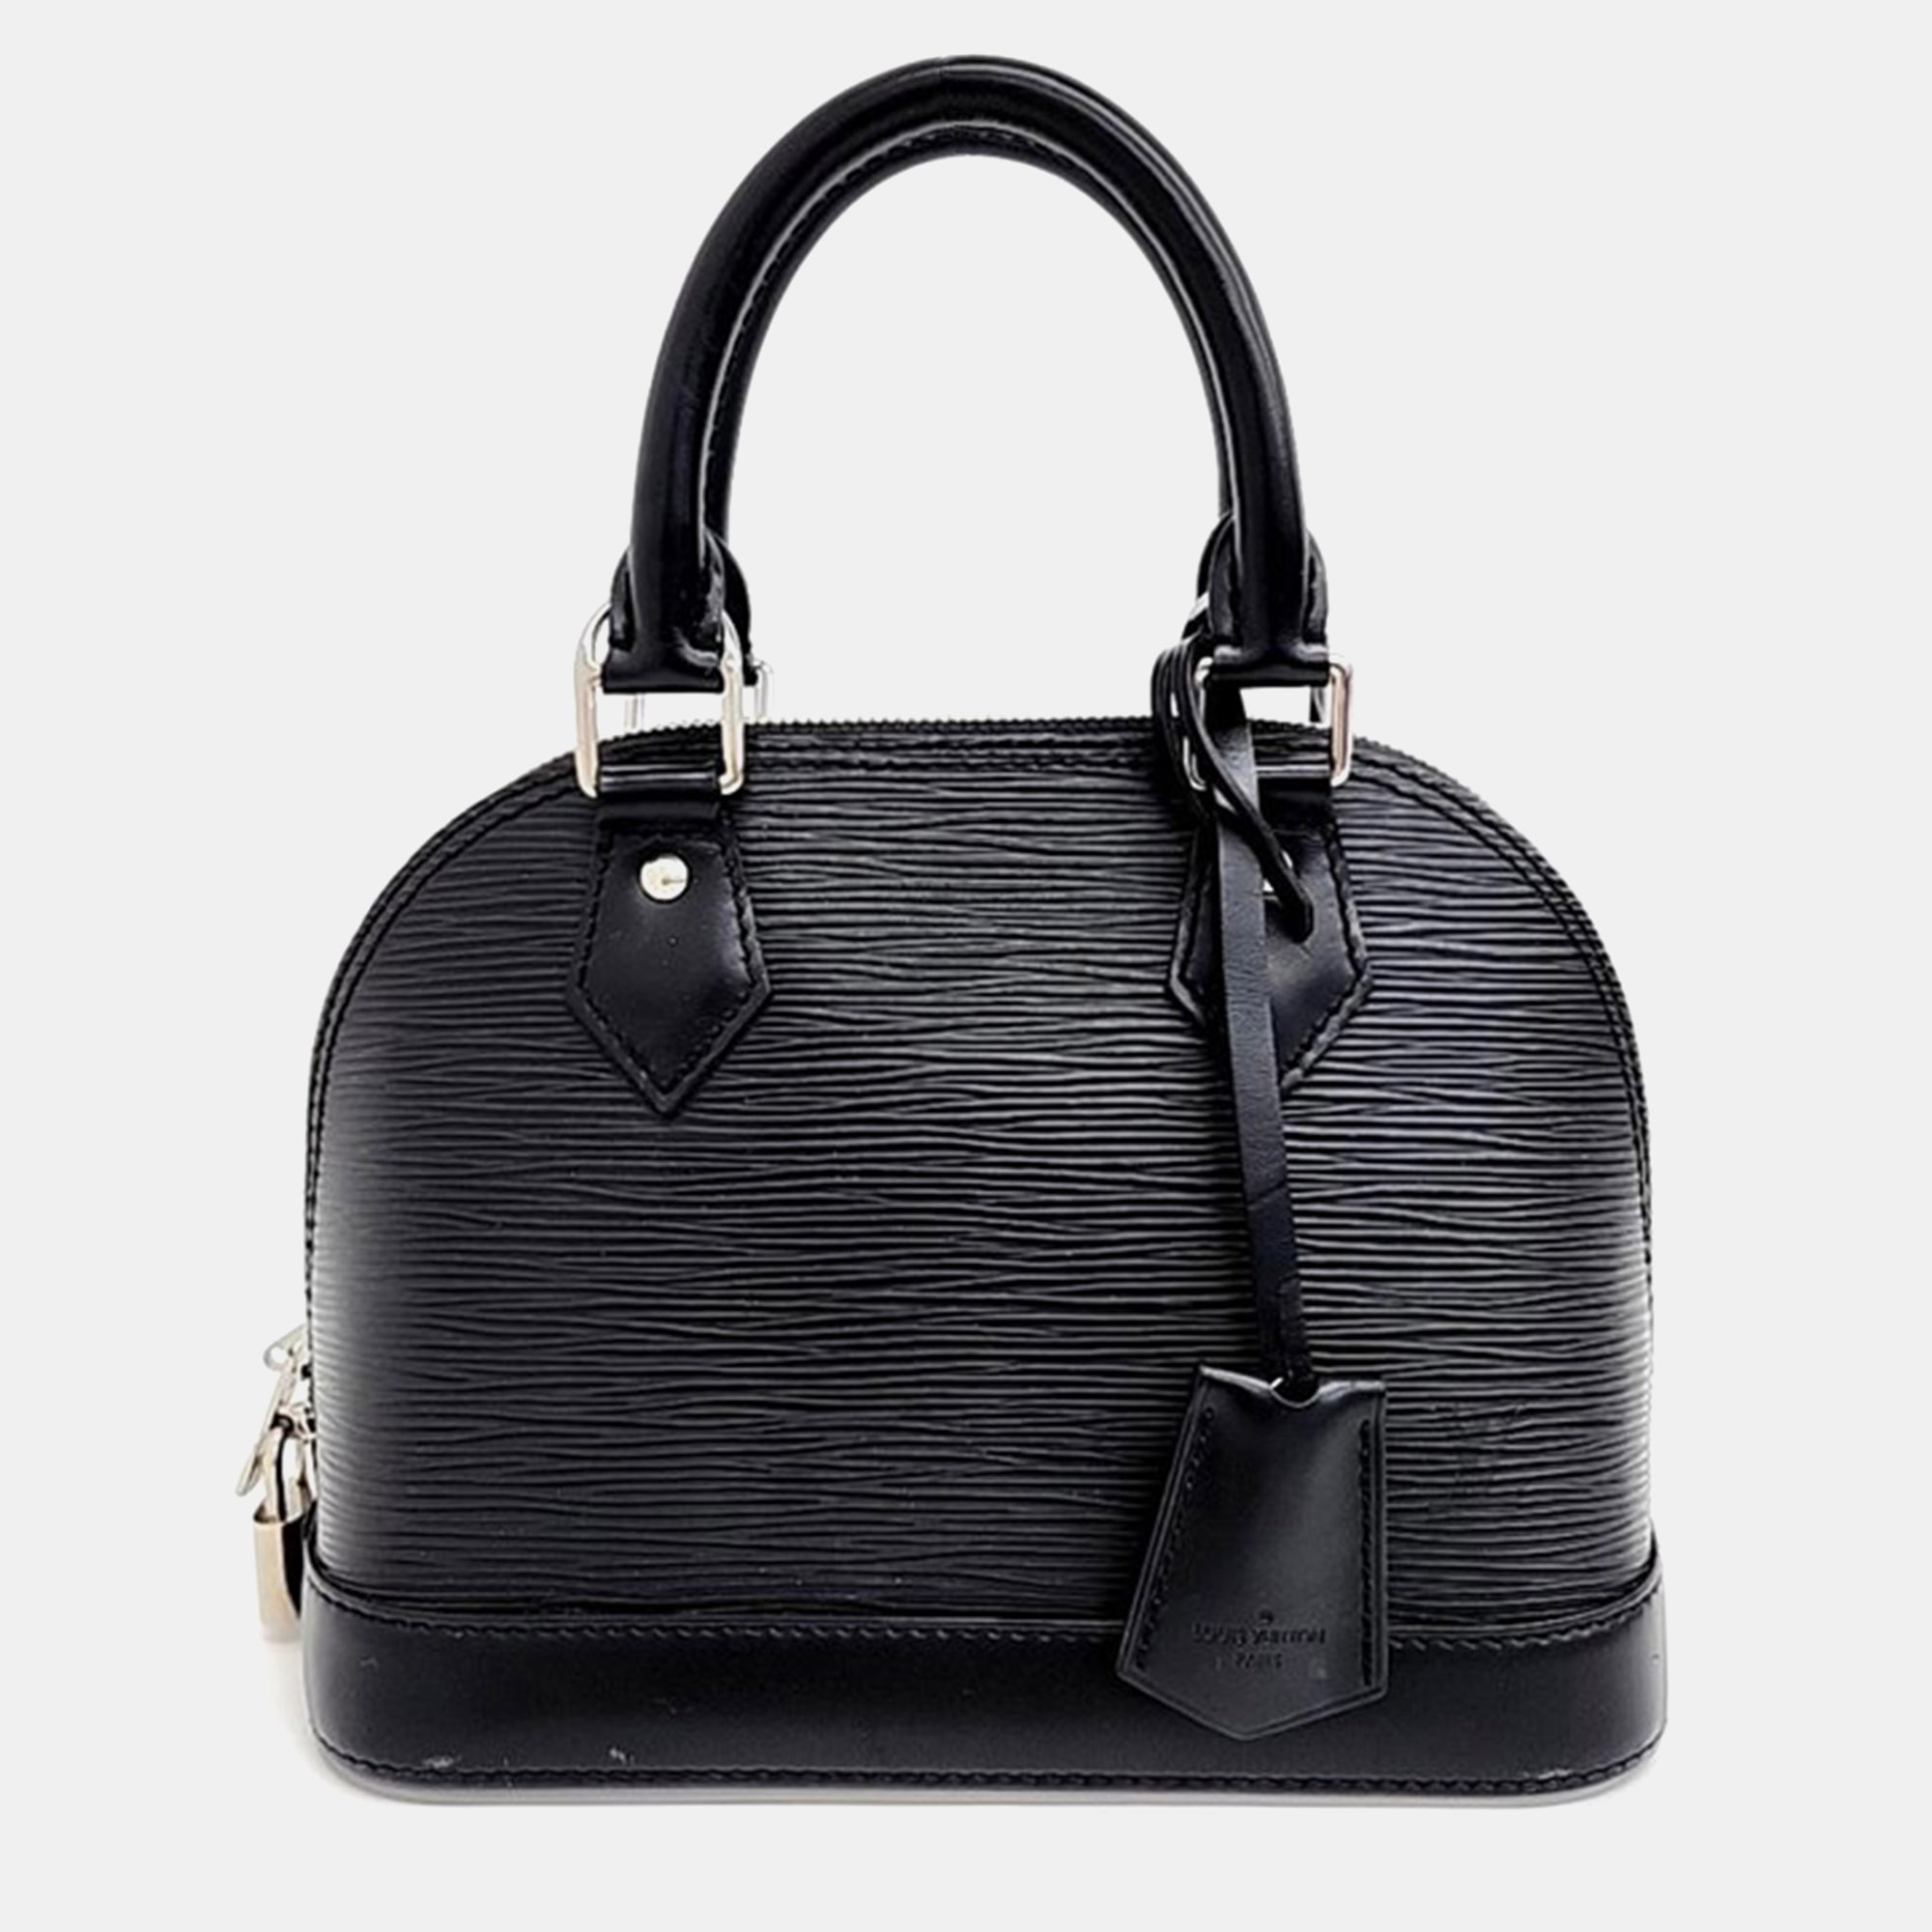 

Louis Vuitton Epi Alma BB M40862 Handbag, Black